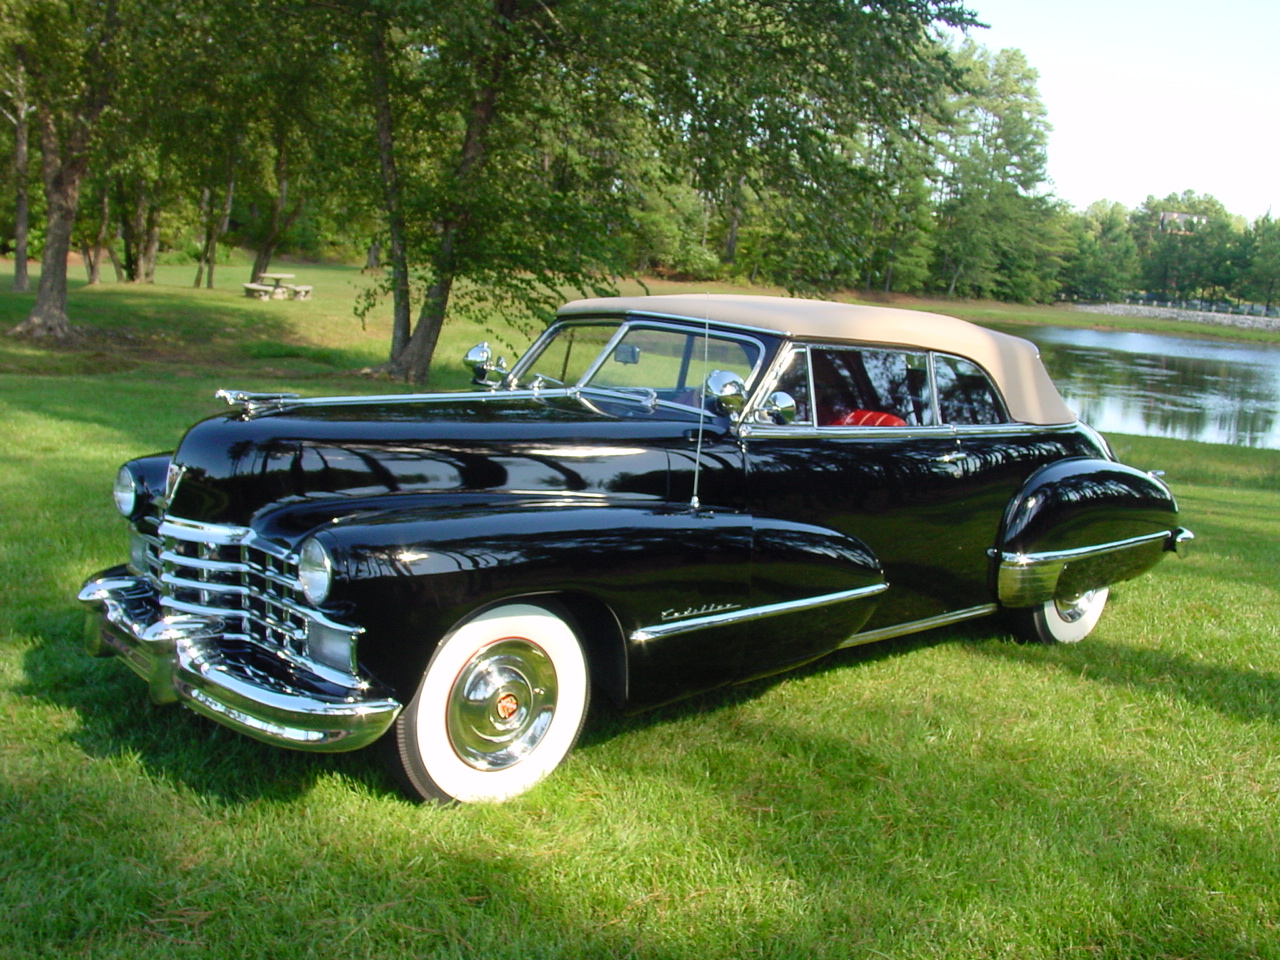 1947 Cadillac Convertible